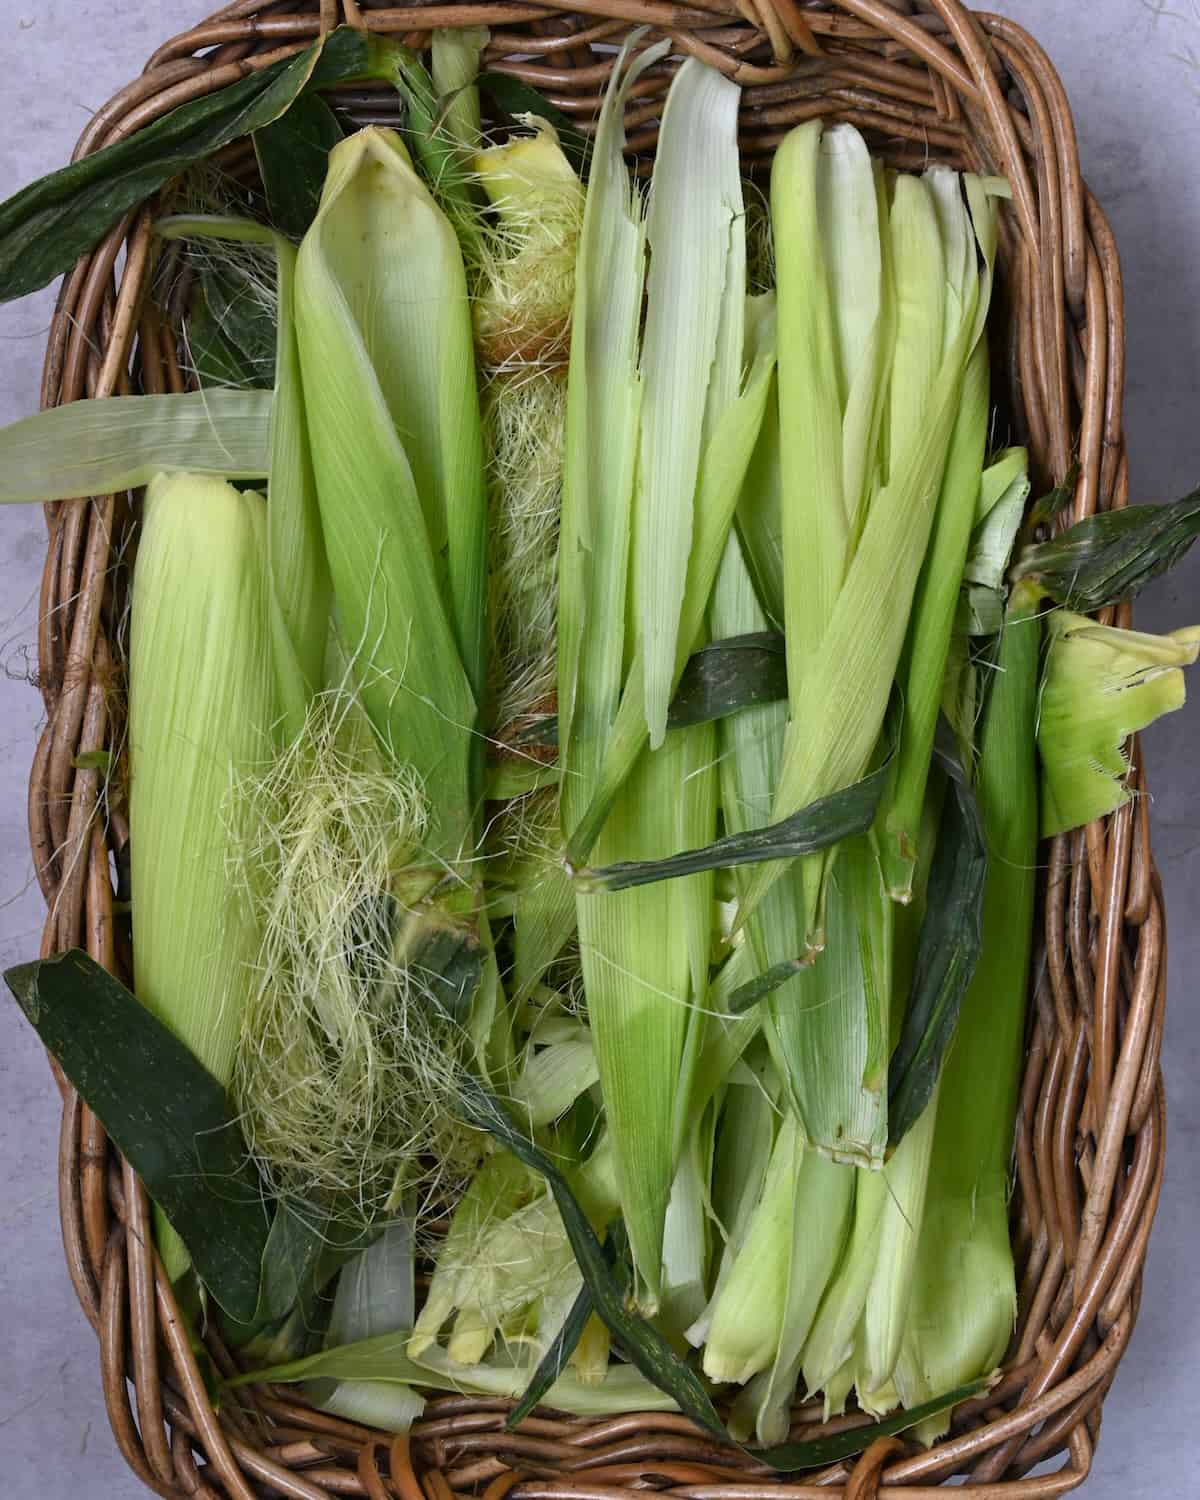 Empty corn husks in a basket